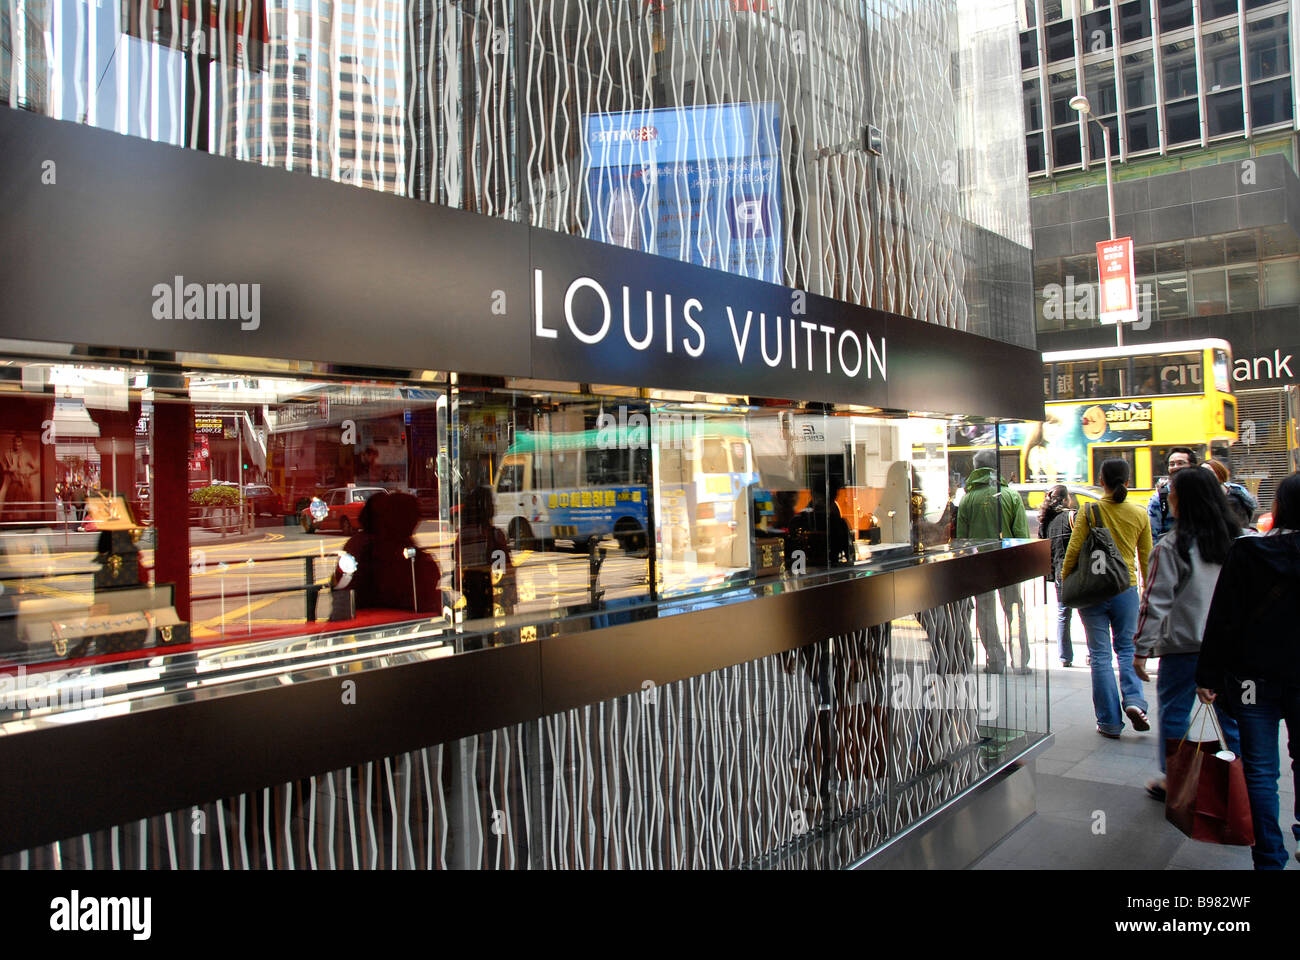 Louis Vuitton Rio de Janeiro, Ipanema Store in Rio De Janeiro